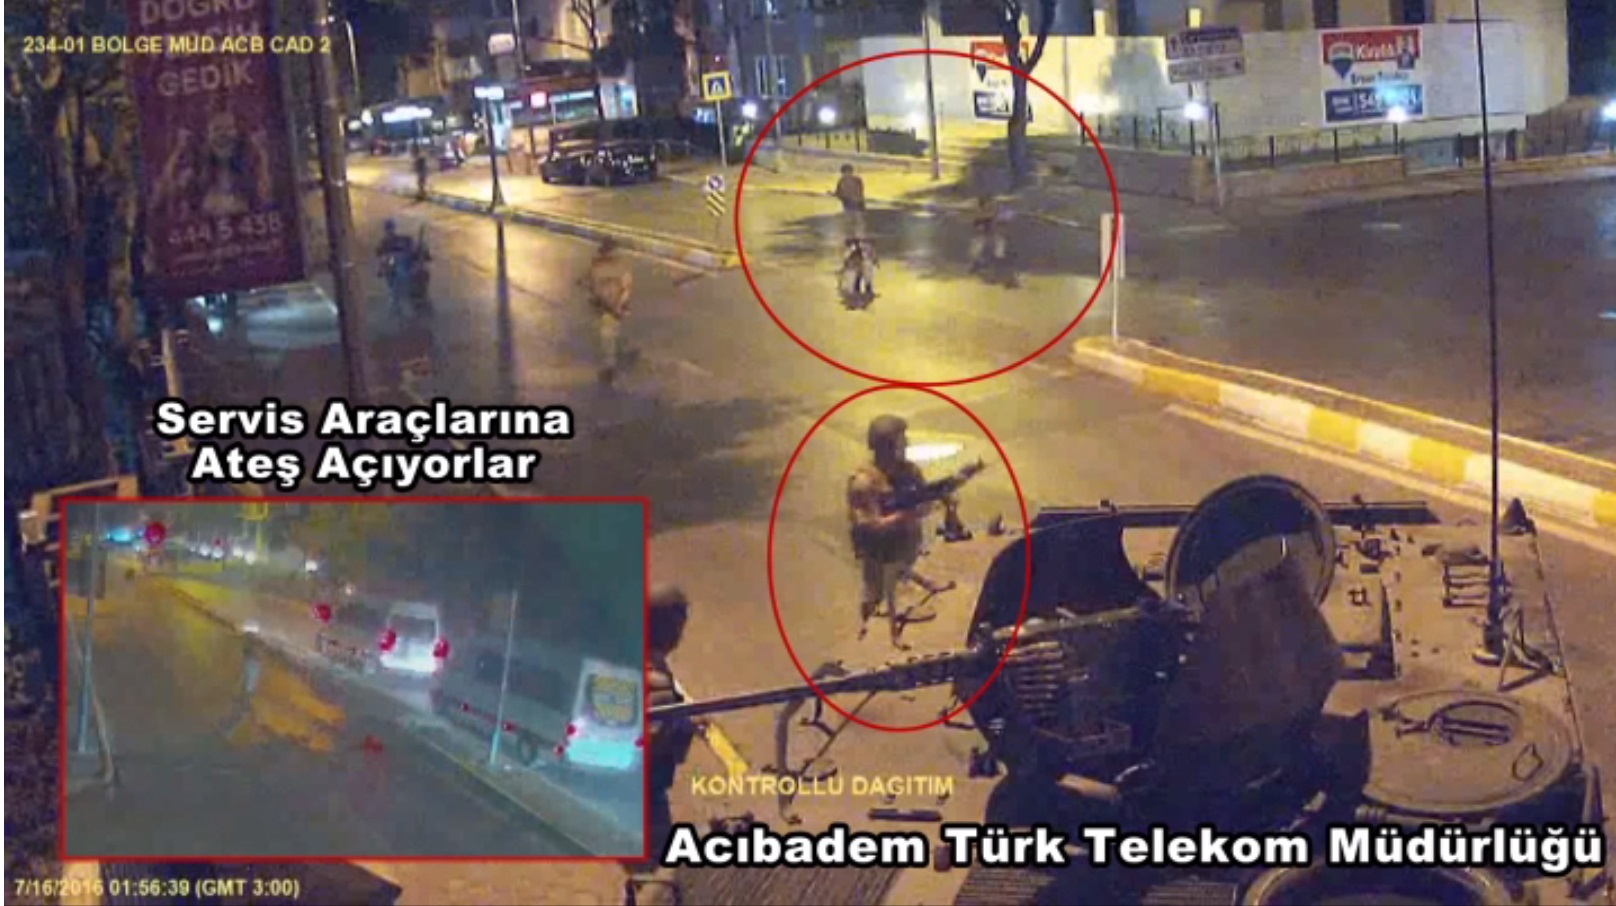 فتح العساكر الأنقلابيون الذين يحاولون الدخول إلى مبنى إدارة الاتصالات التركية الموجود في حي آجي بادم في قاضي كوي النار على سيارات الخدمة المارة في الطريق.